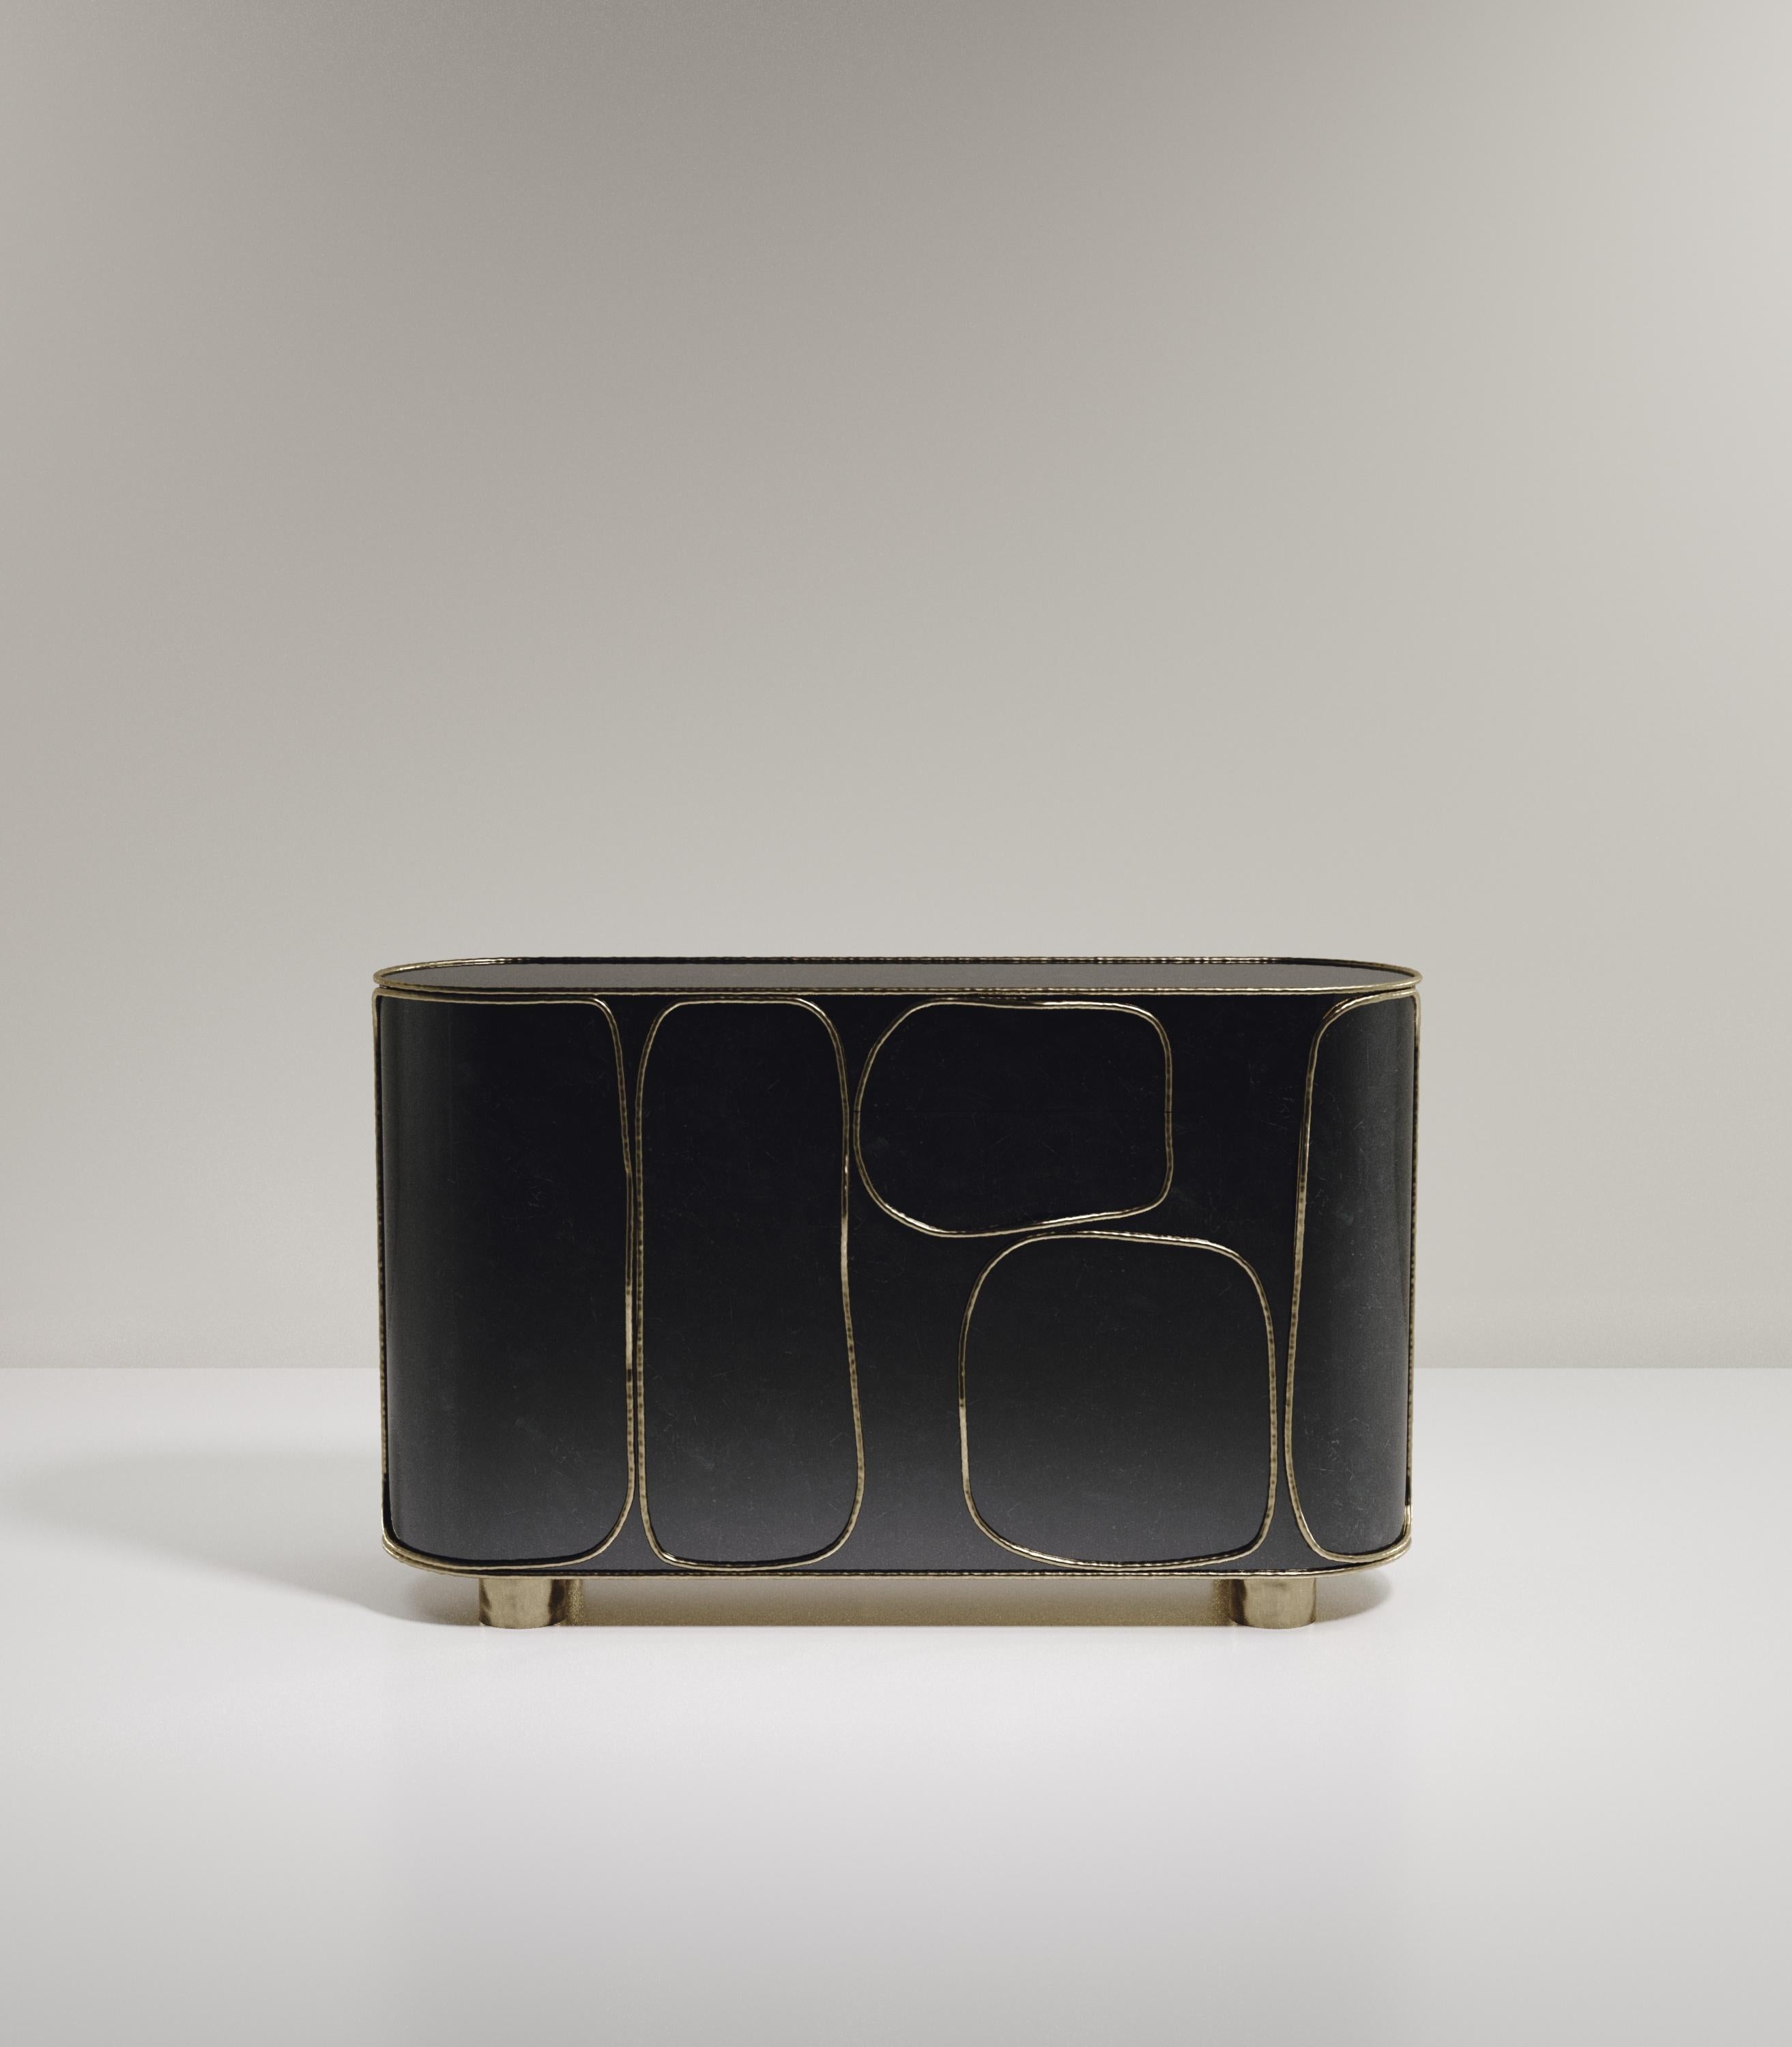 Das Buffet Arianne von R&Y Augousti ist ein einzigartiges Einzelstück. Das gesamte Stück ist mit schwarzer Federschale eingelegt, die mit komplizierten Bronze-Patina-Messing-Details akzentuiert ist, die den für Augousti typischen 